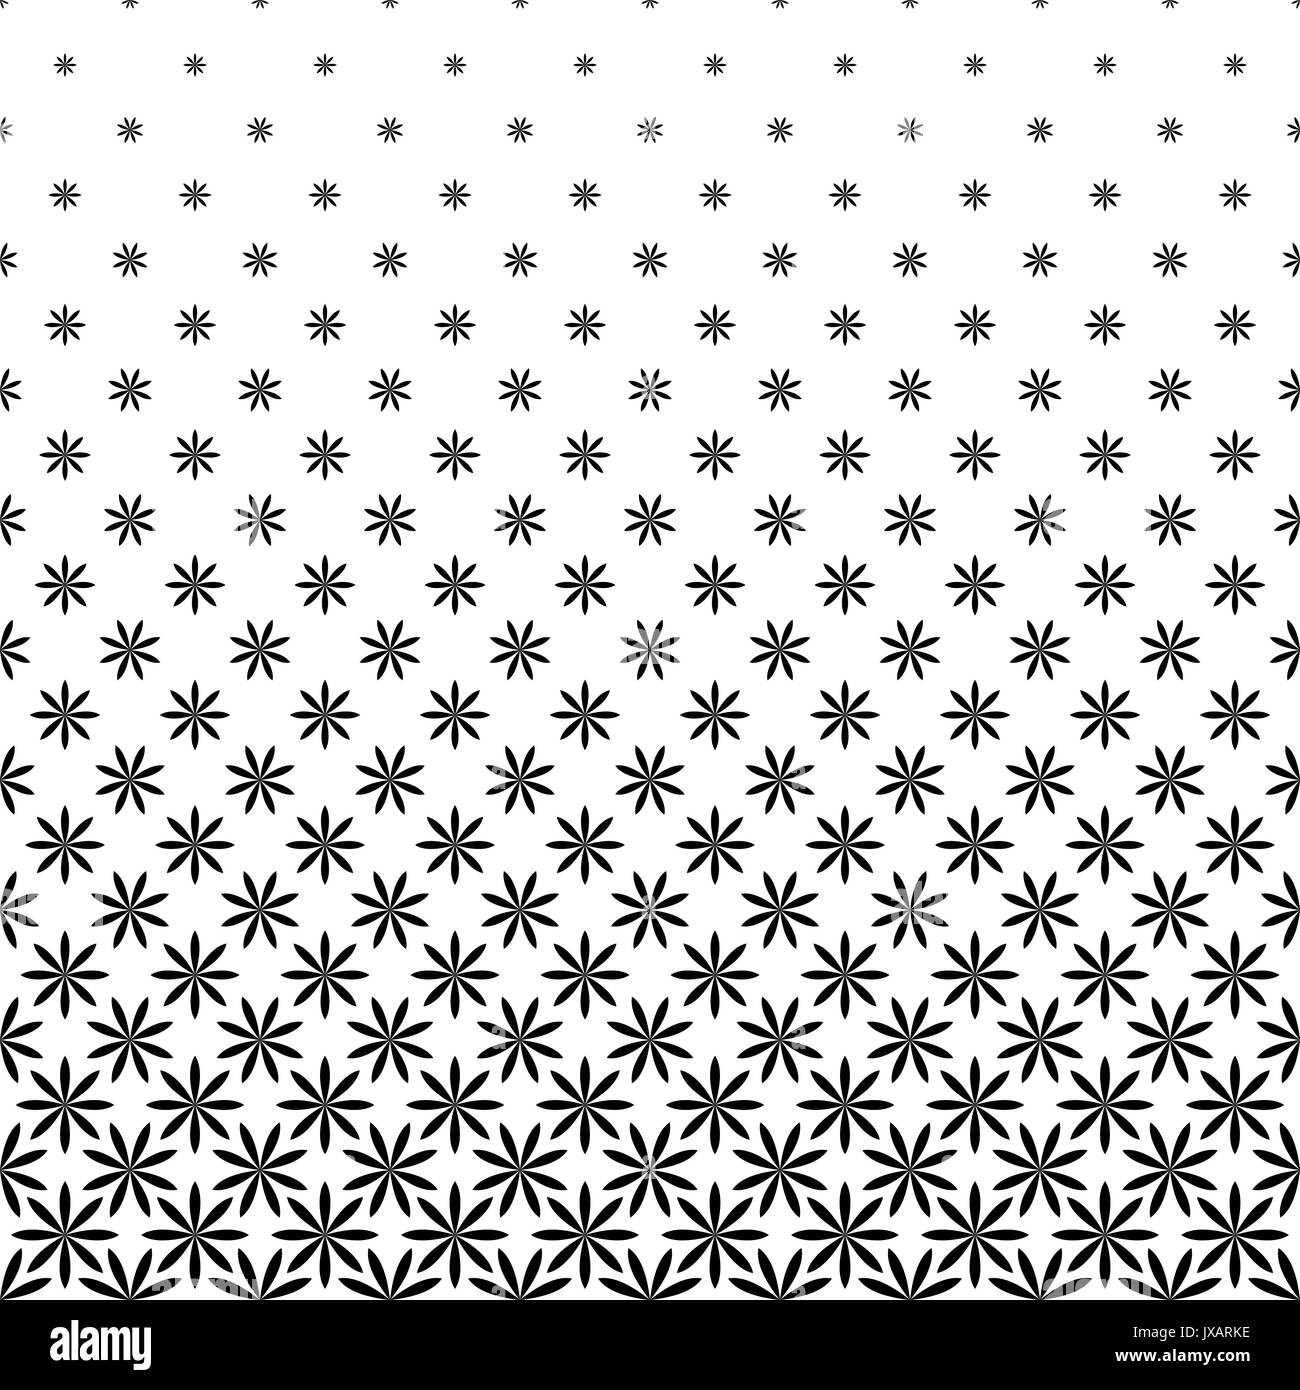 Motif de fleurs stylisées géométriques monochromes - contexte conception graphique à partir de formes courbes Illustration de Vecteur